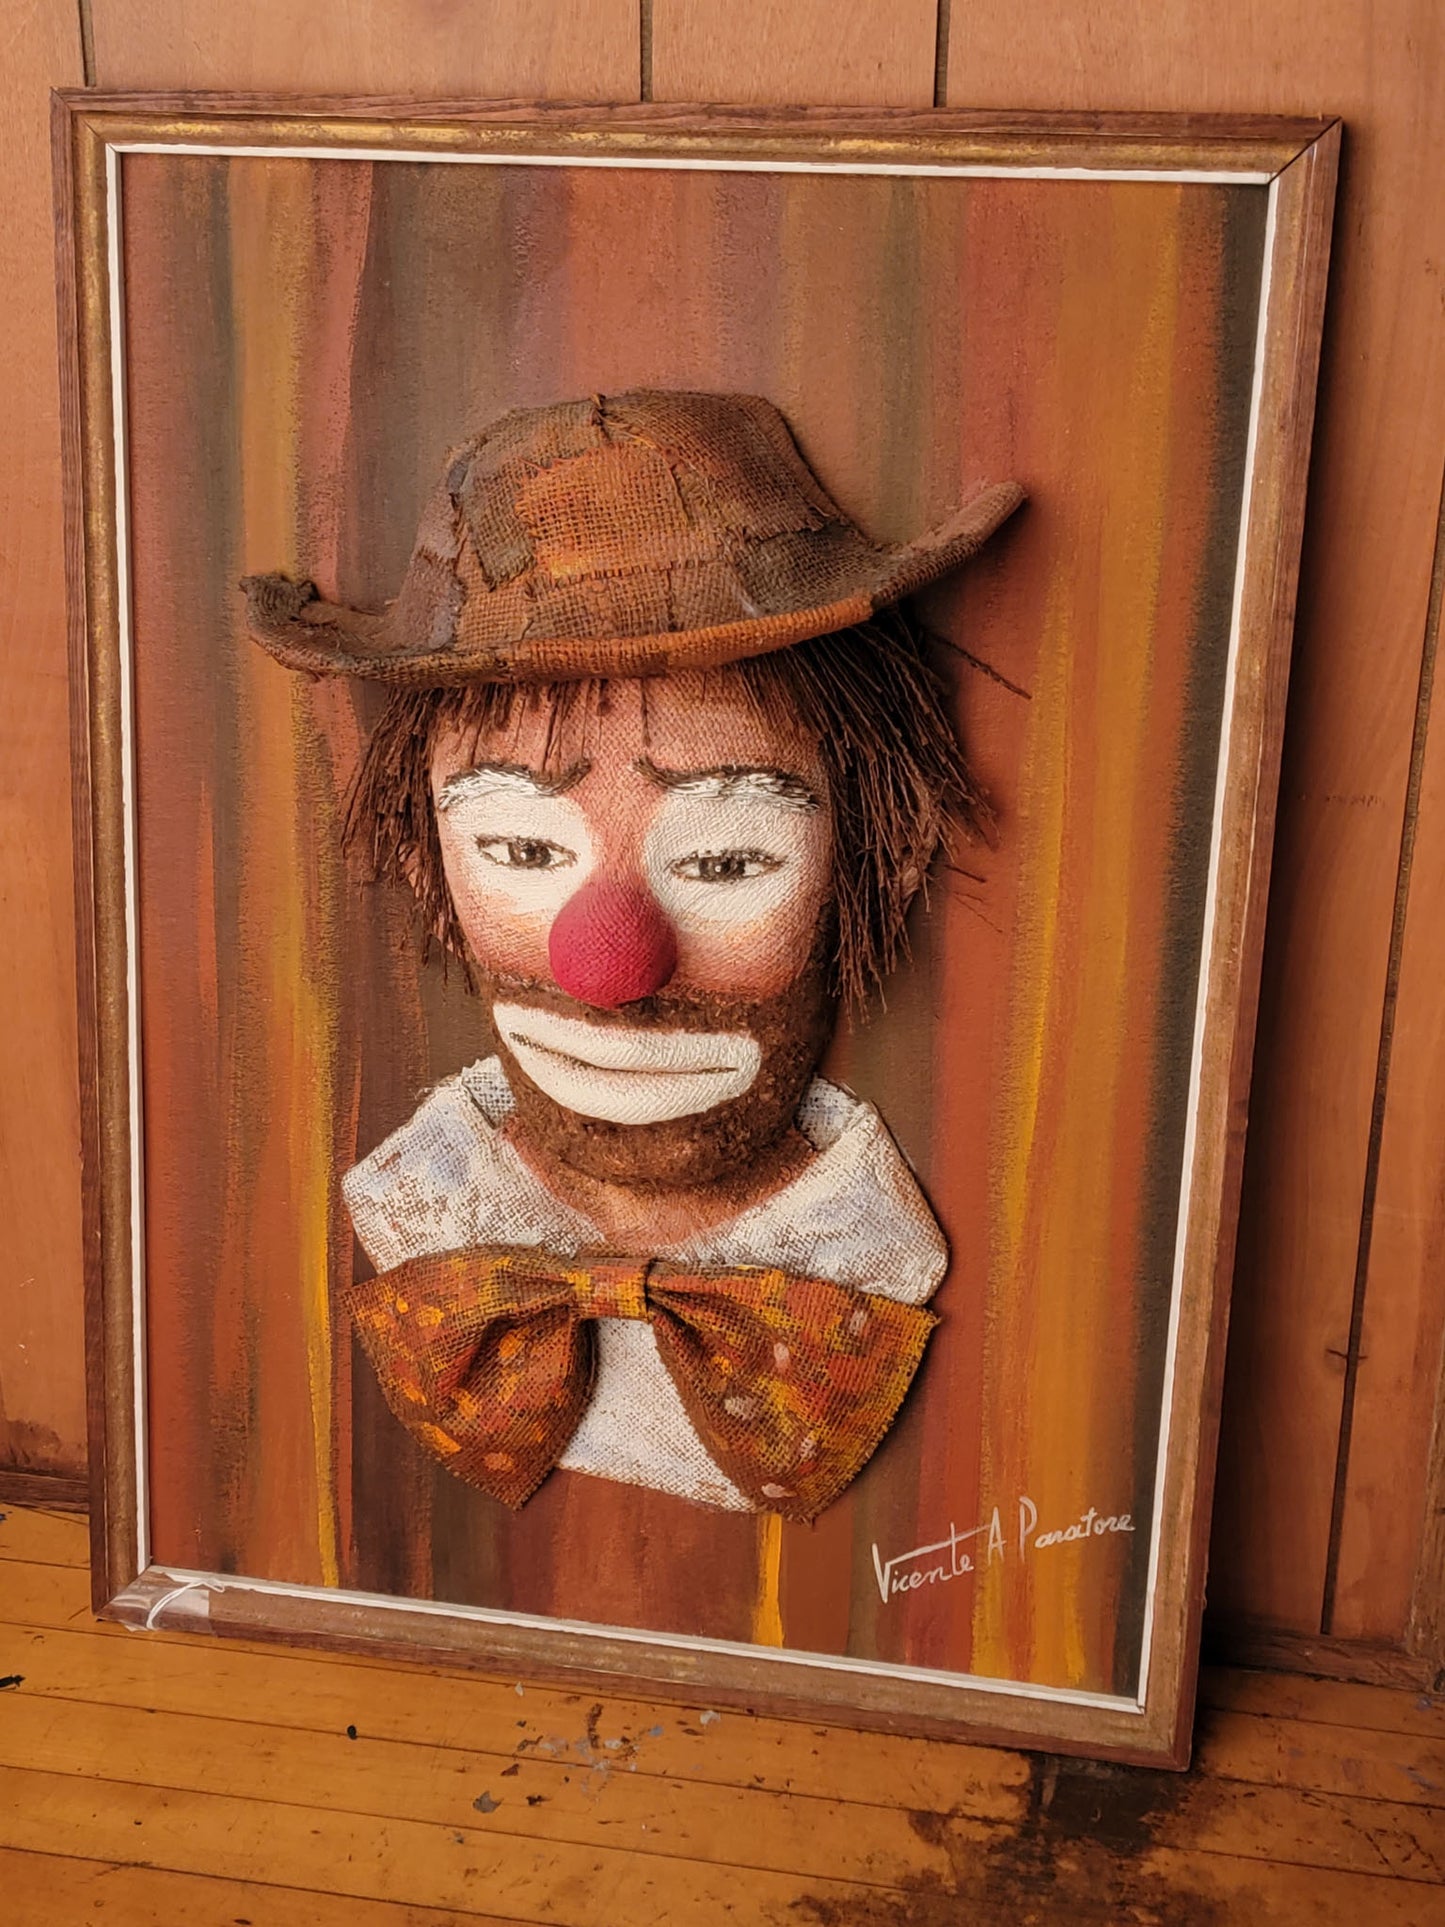 Original Clown Art by Vincente Paratore